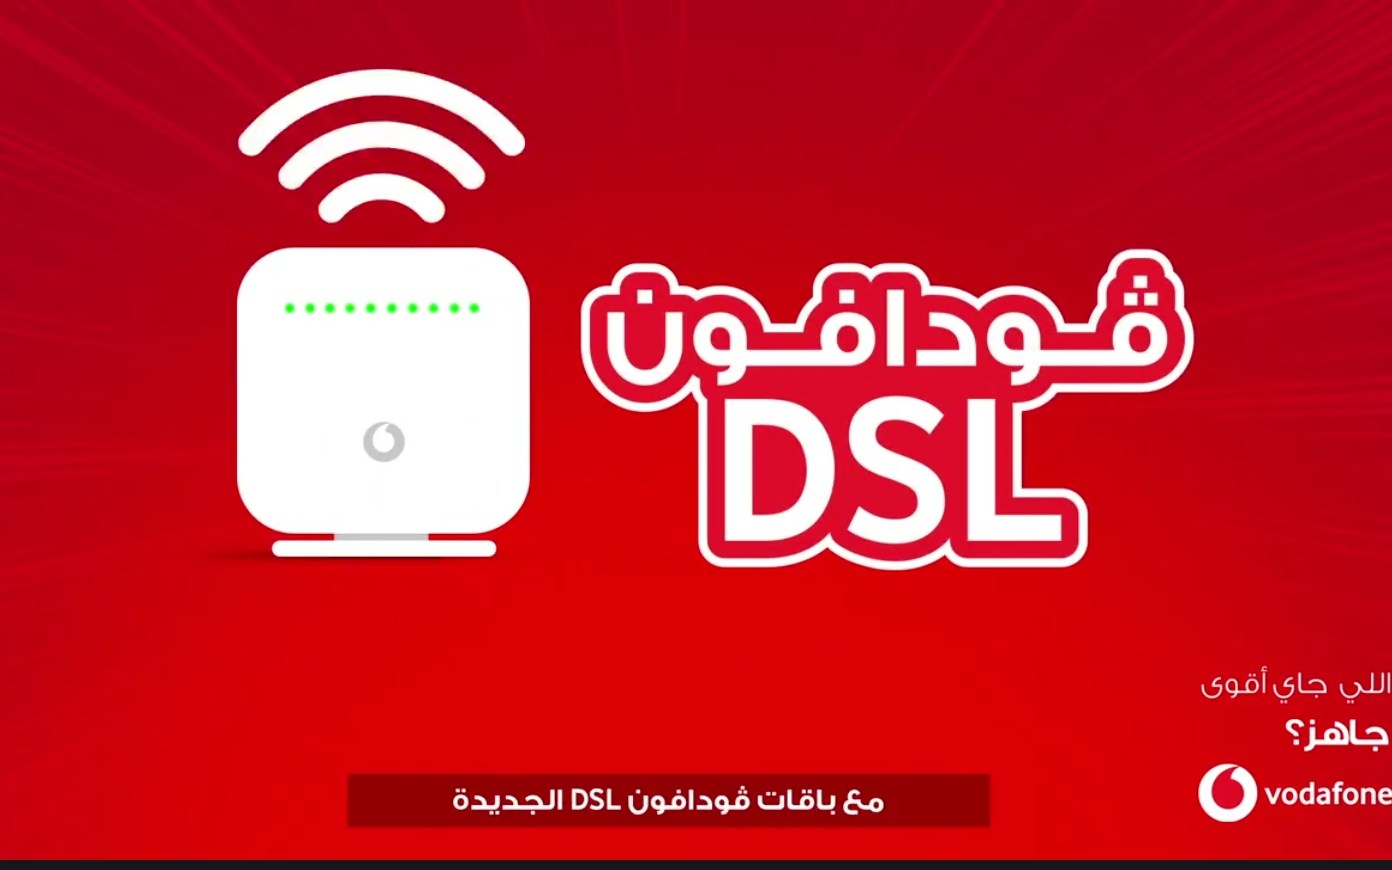 فودافون مصر تعلن خفض أسعار باقات الانترنت الأرضي  DSL بقيمة 25 % لمدة 6 أشهر